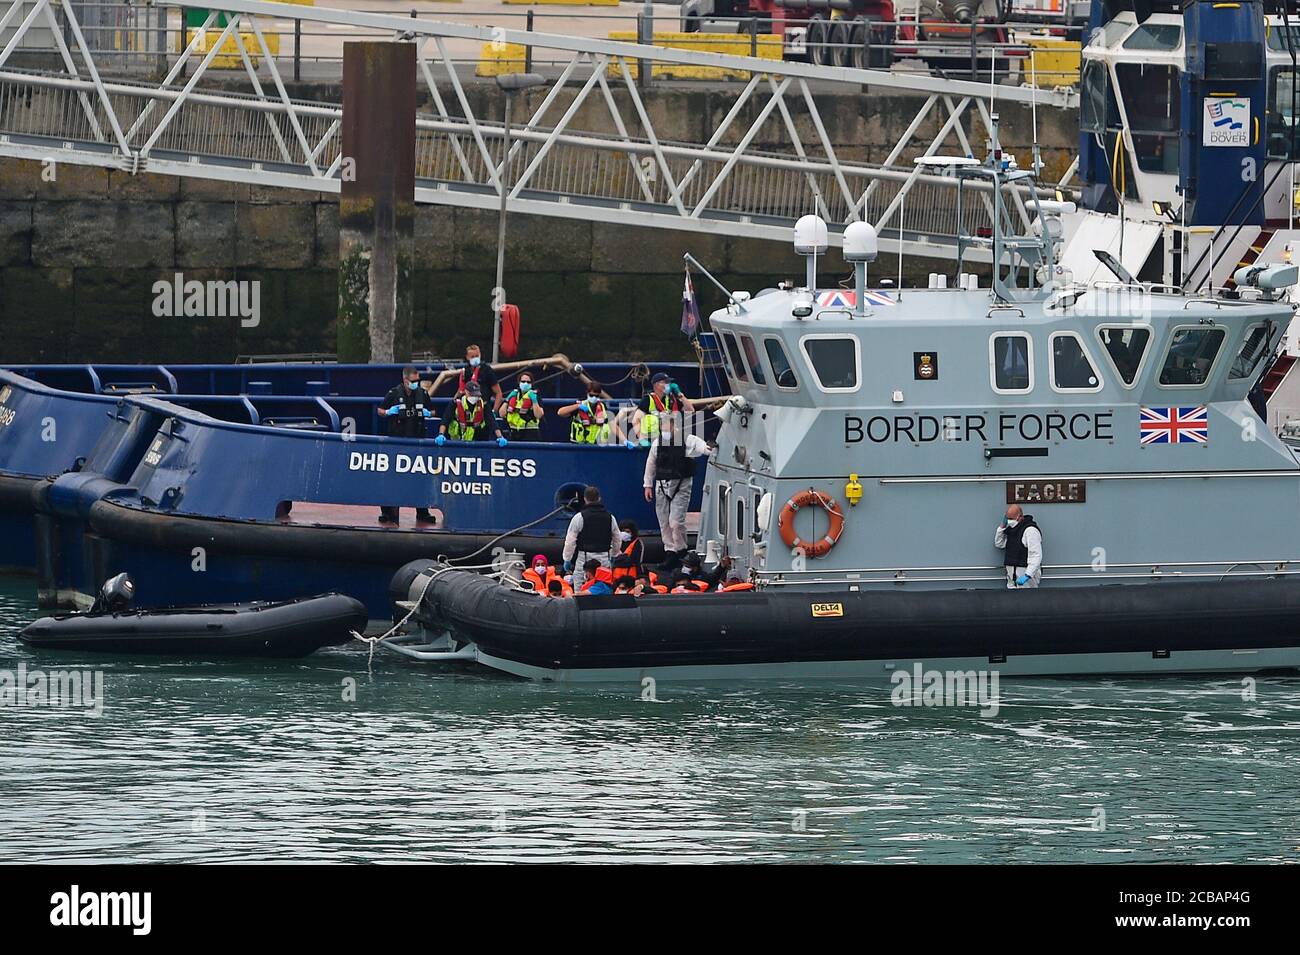 Eine Gruppe von Menschen, die als Migranten gedacht werden, werden von Grenzschutzbeamten nach Dover, Kent, gebracht, nachdem einige kleine Bootsvorfälle im Kanal heute vorgekommen waren. Stockfoto